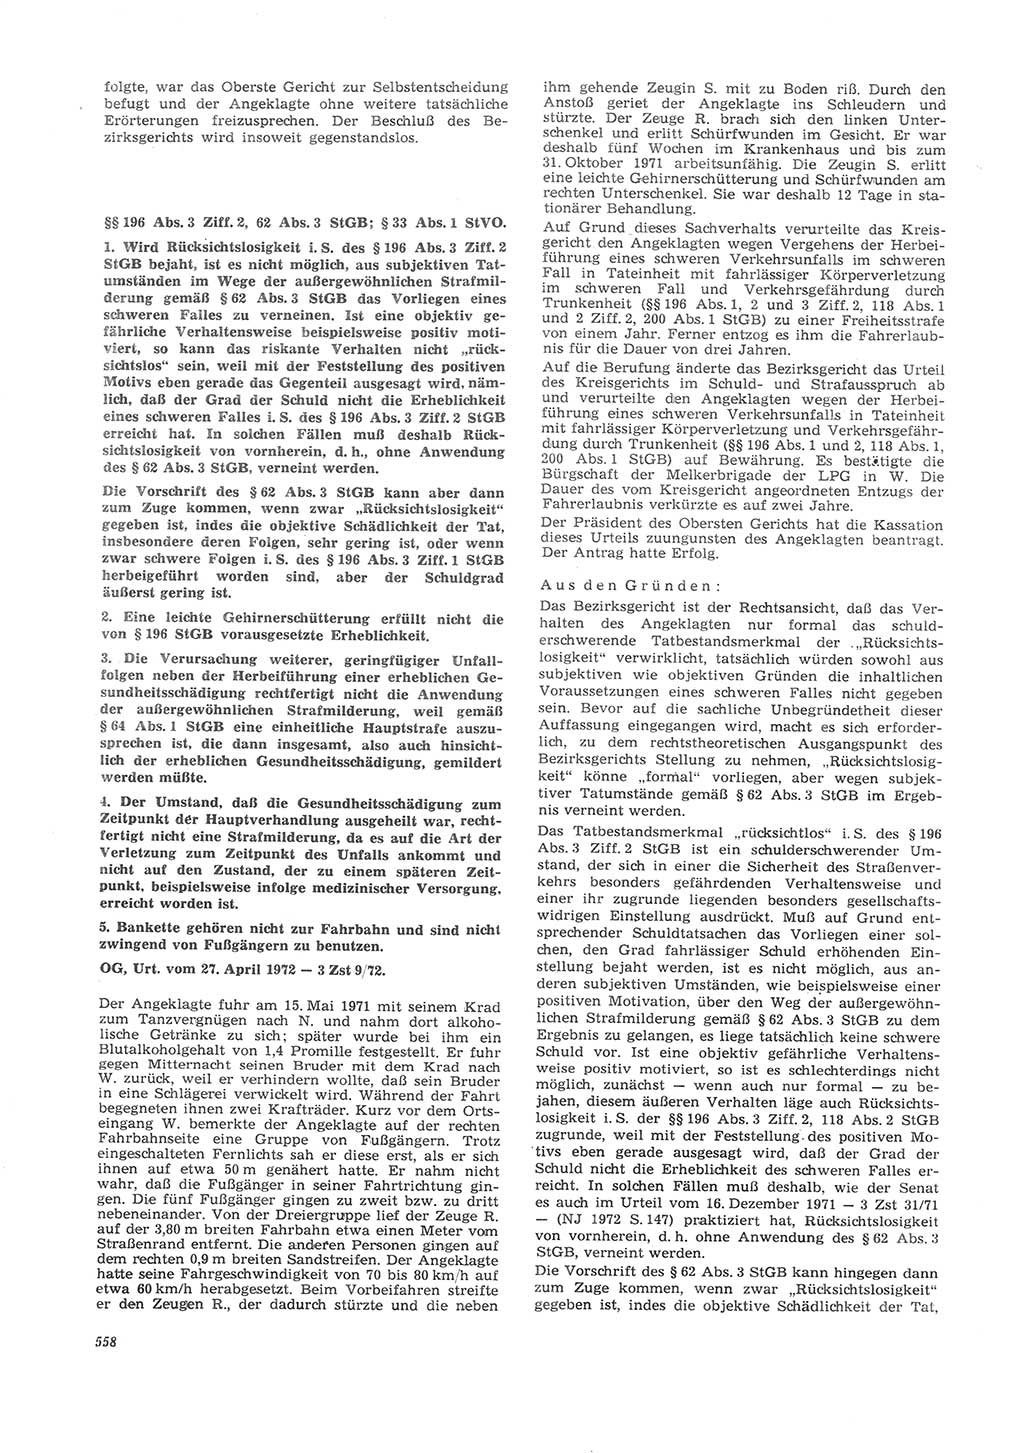 Neue Justiz (NJ), Zeitschrift für Recht und Rechtswissenschaft [Deutsche Demokratische Republik (DDR)], 26. Jahrgang 1972, Seite 558 (NJ DDR 1972, S. 558)